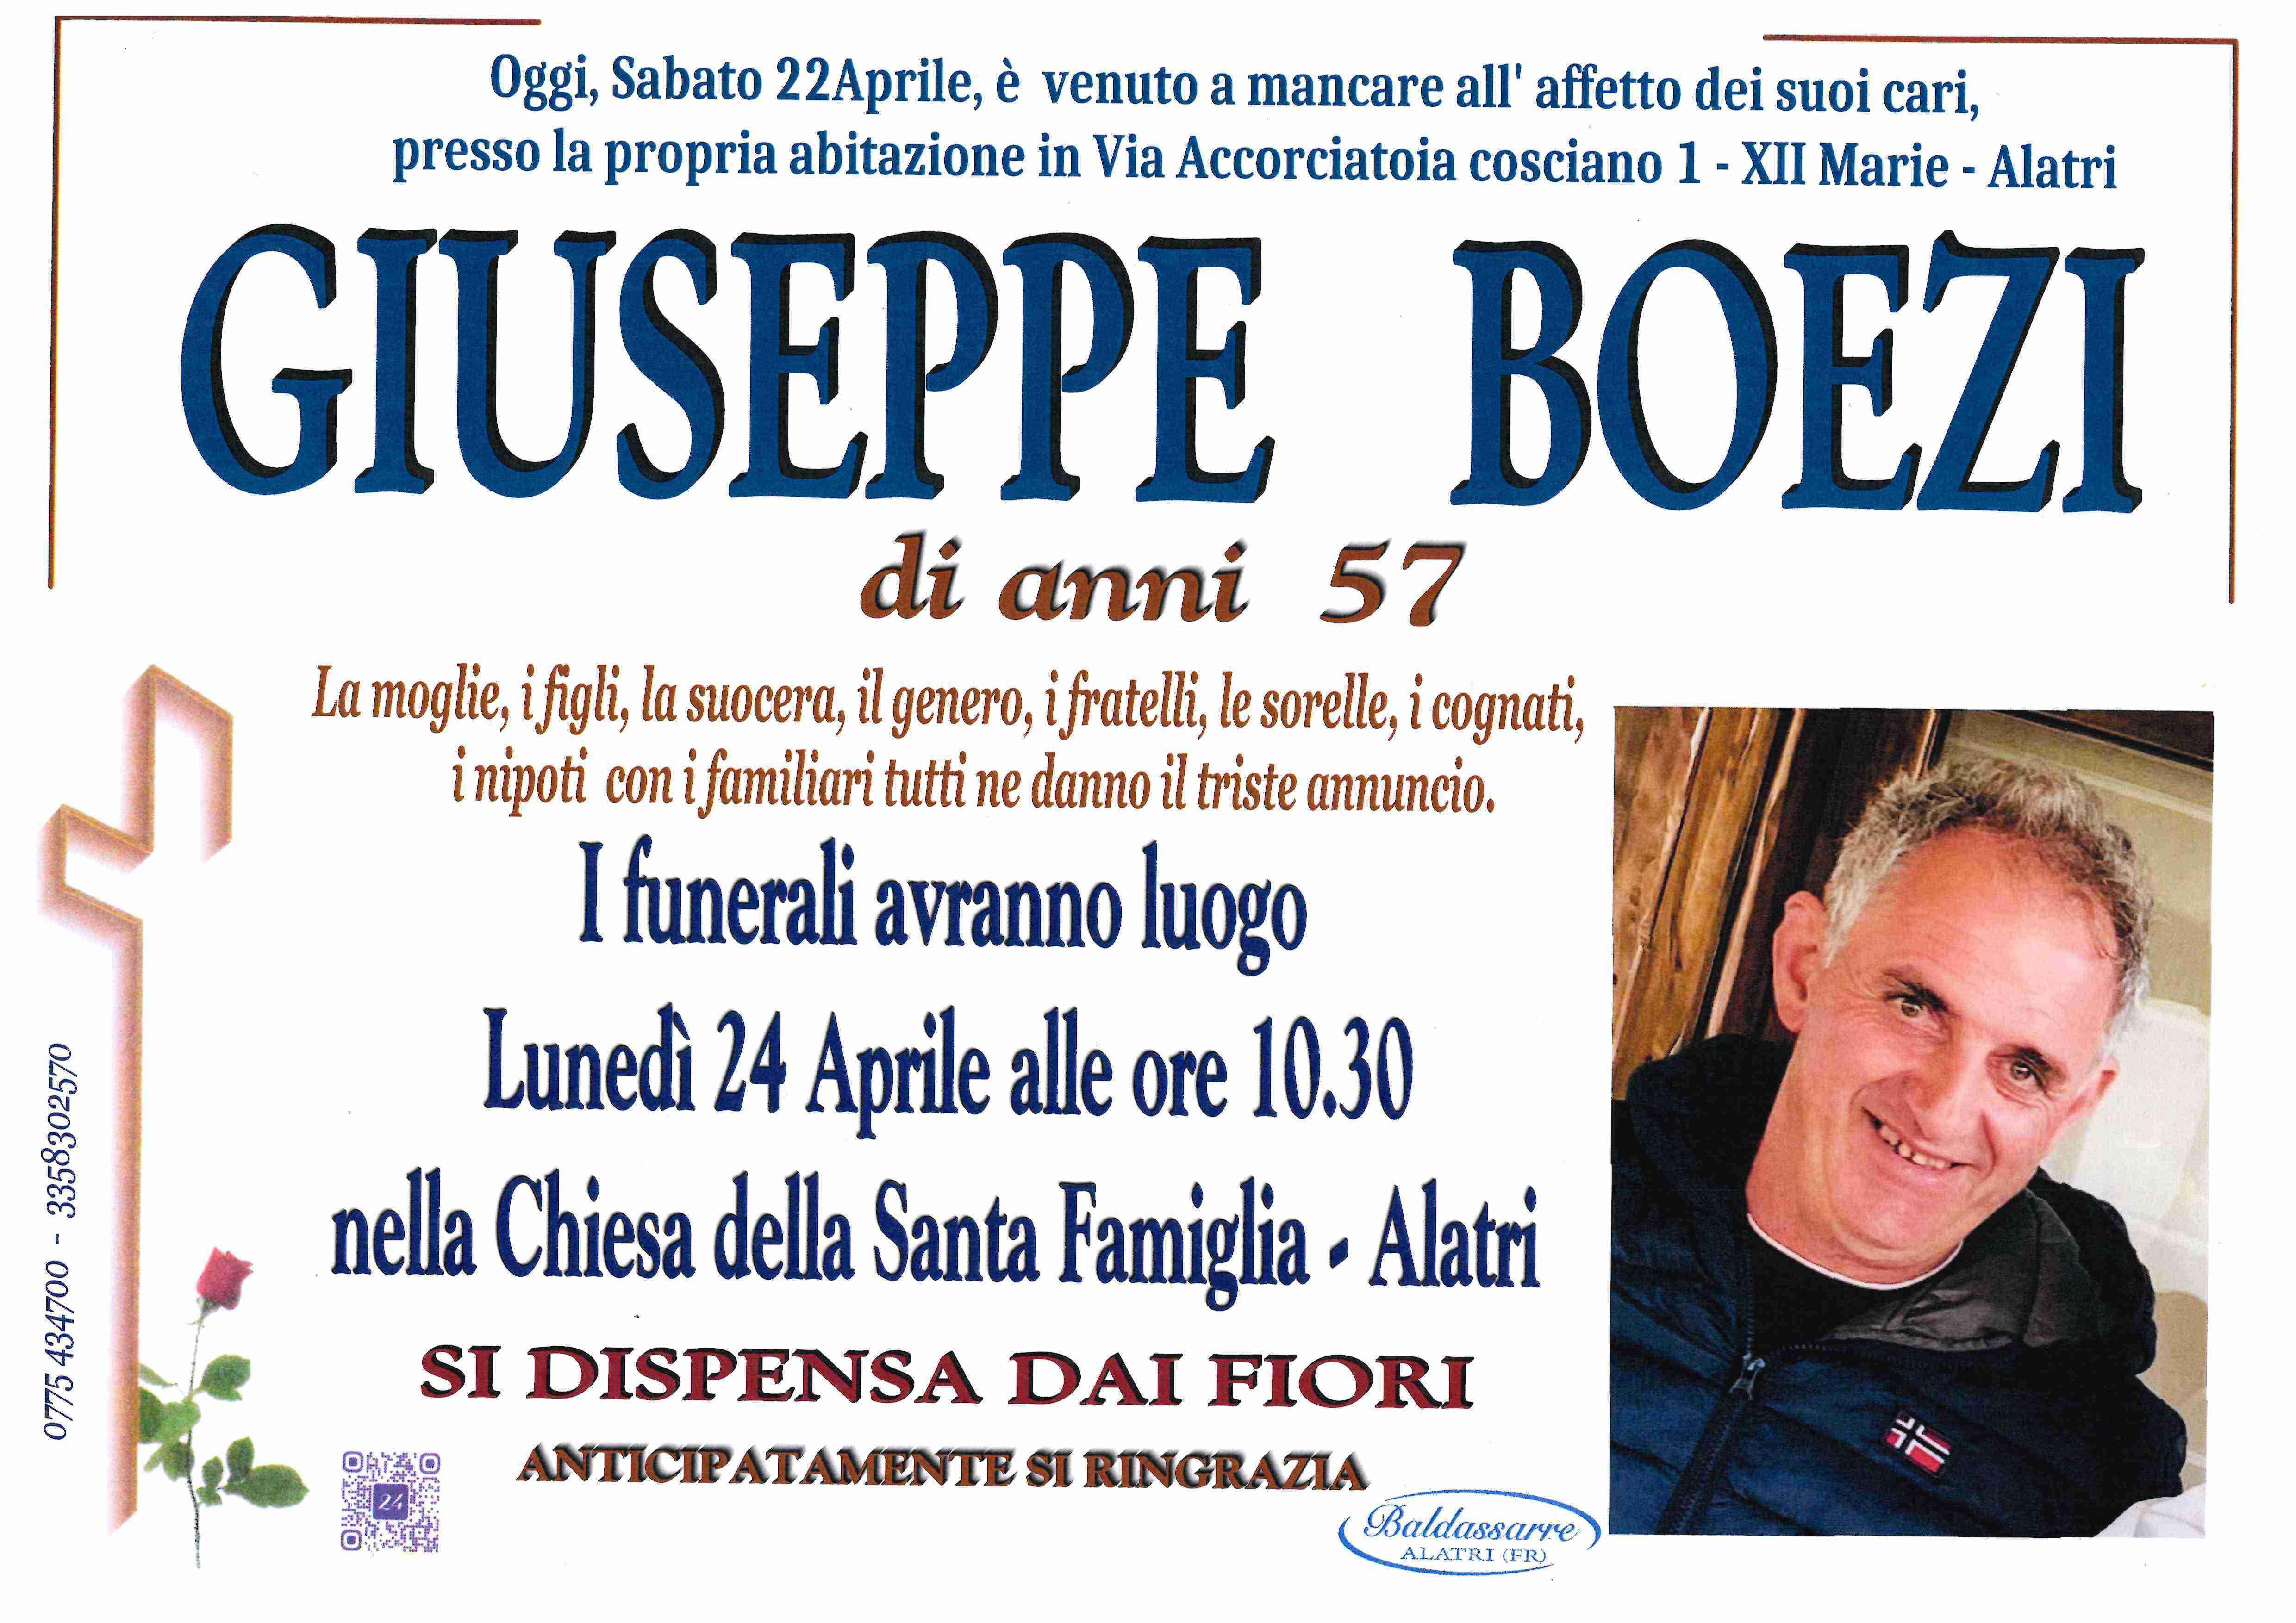 Giuseppe Boezi